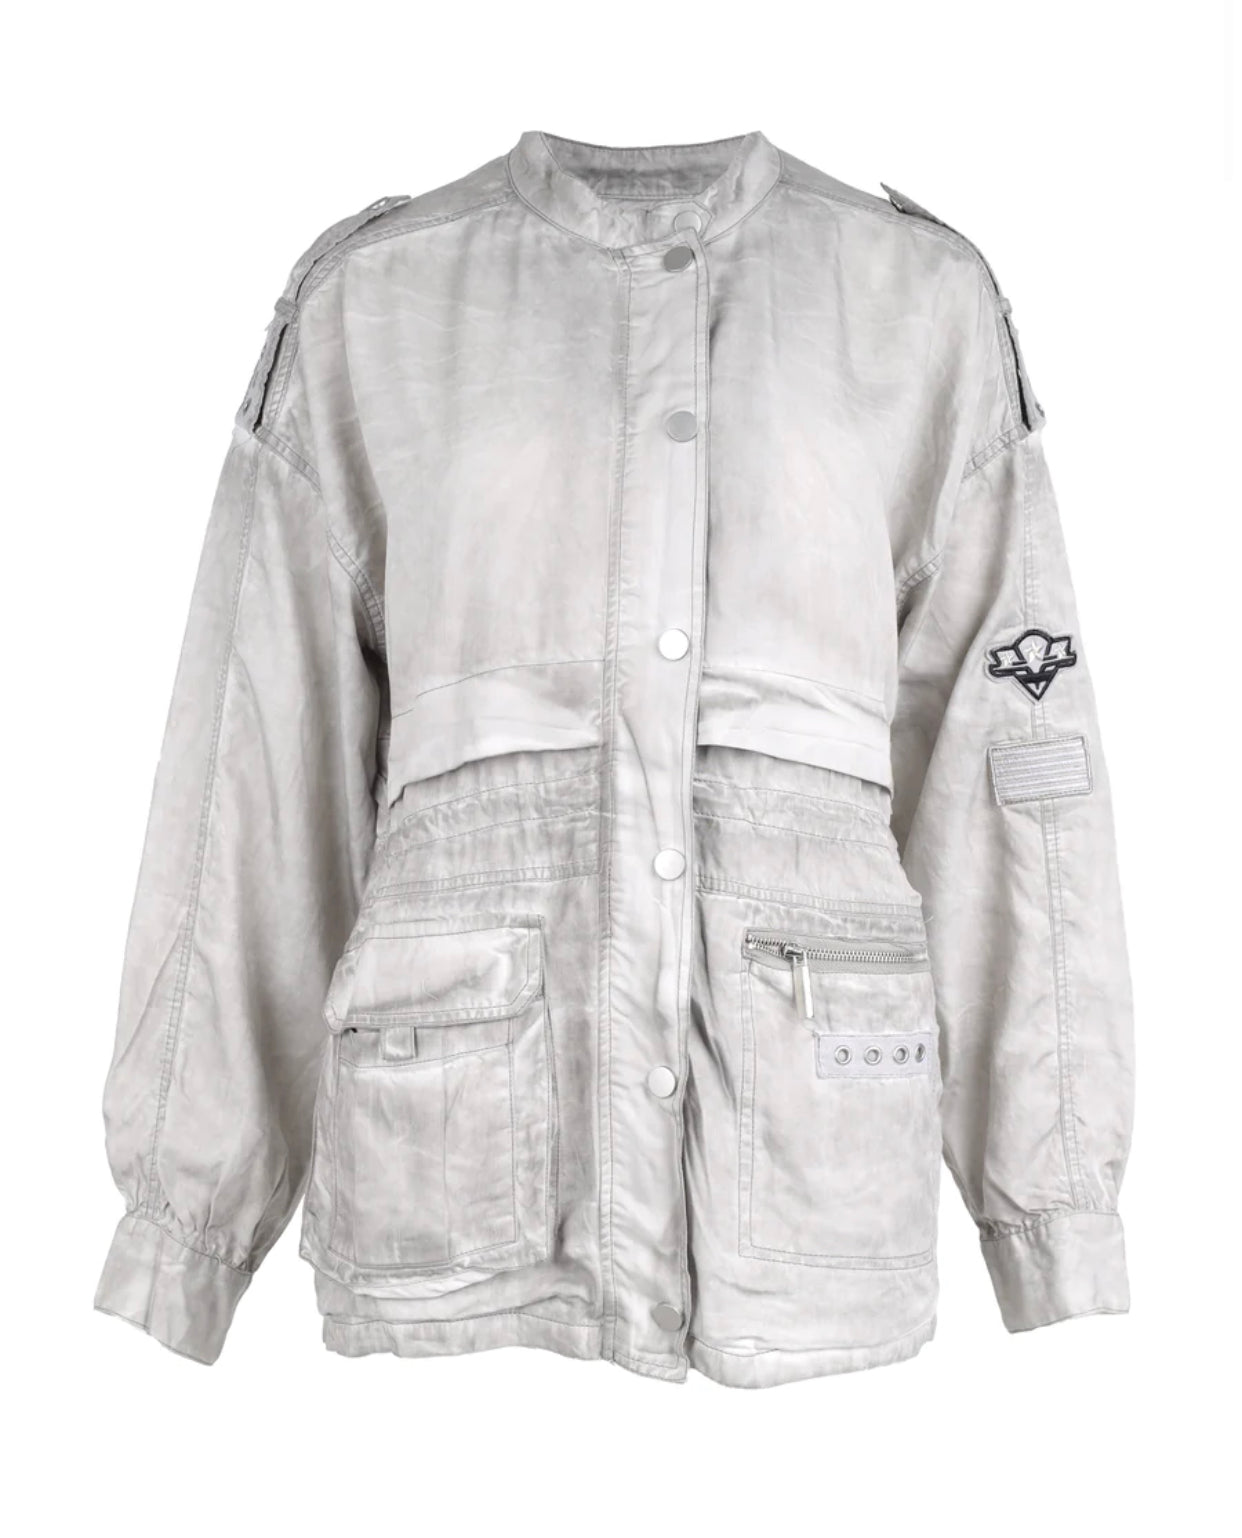 Terra Shirt Jacket in Kit